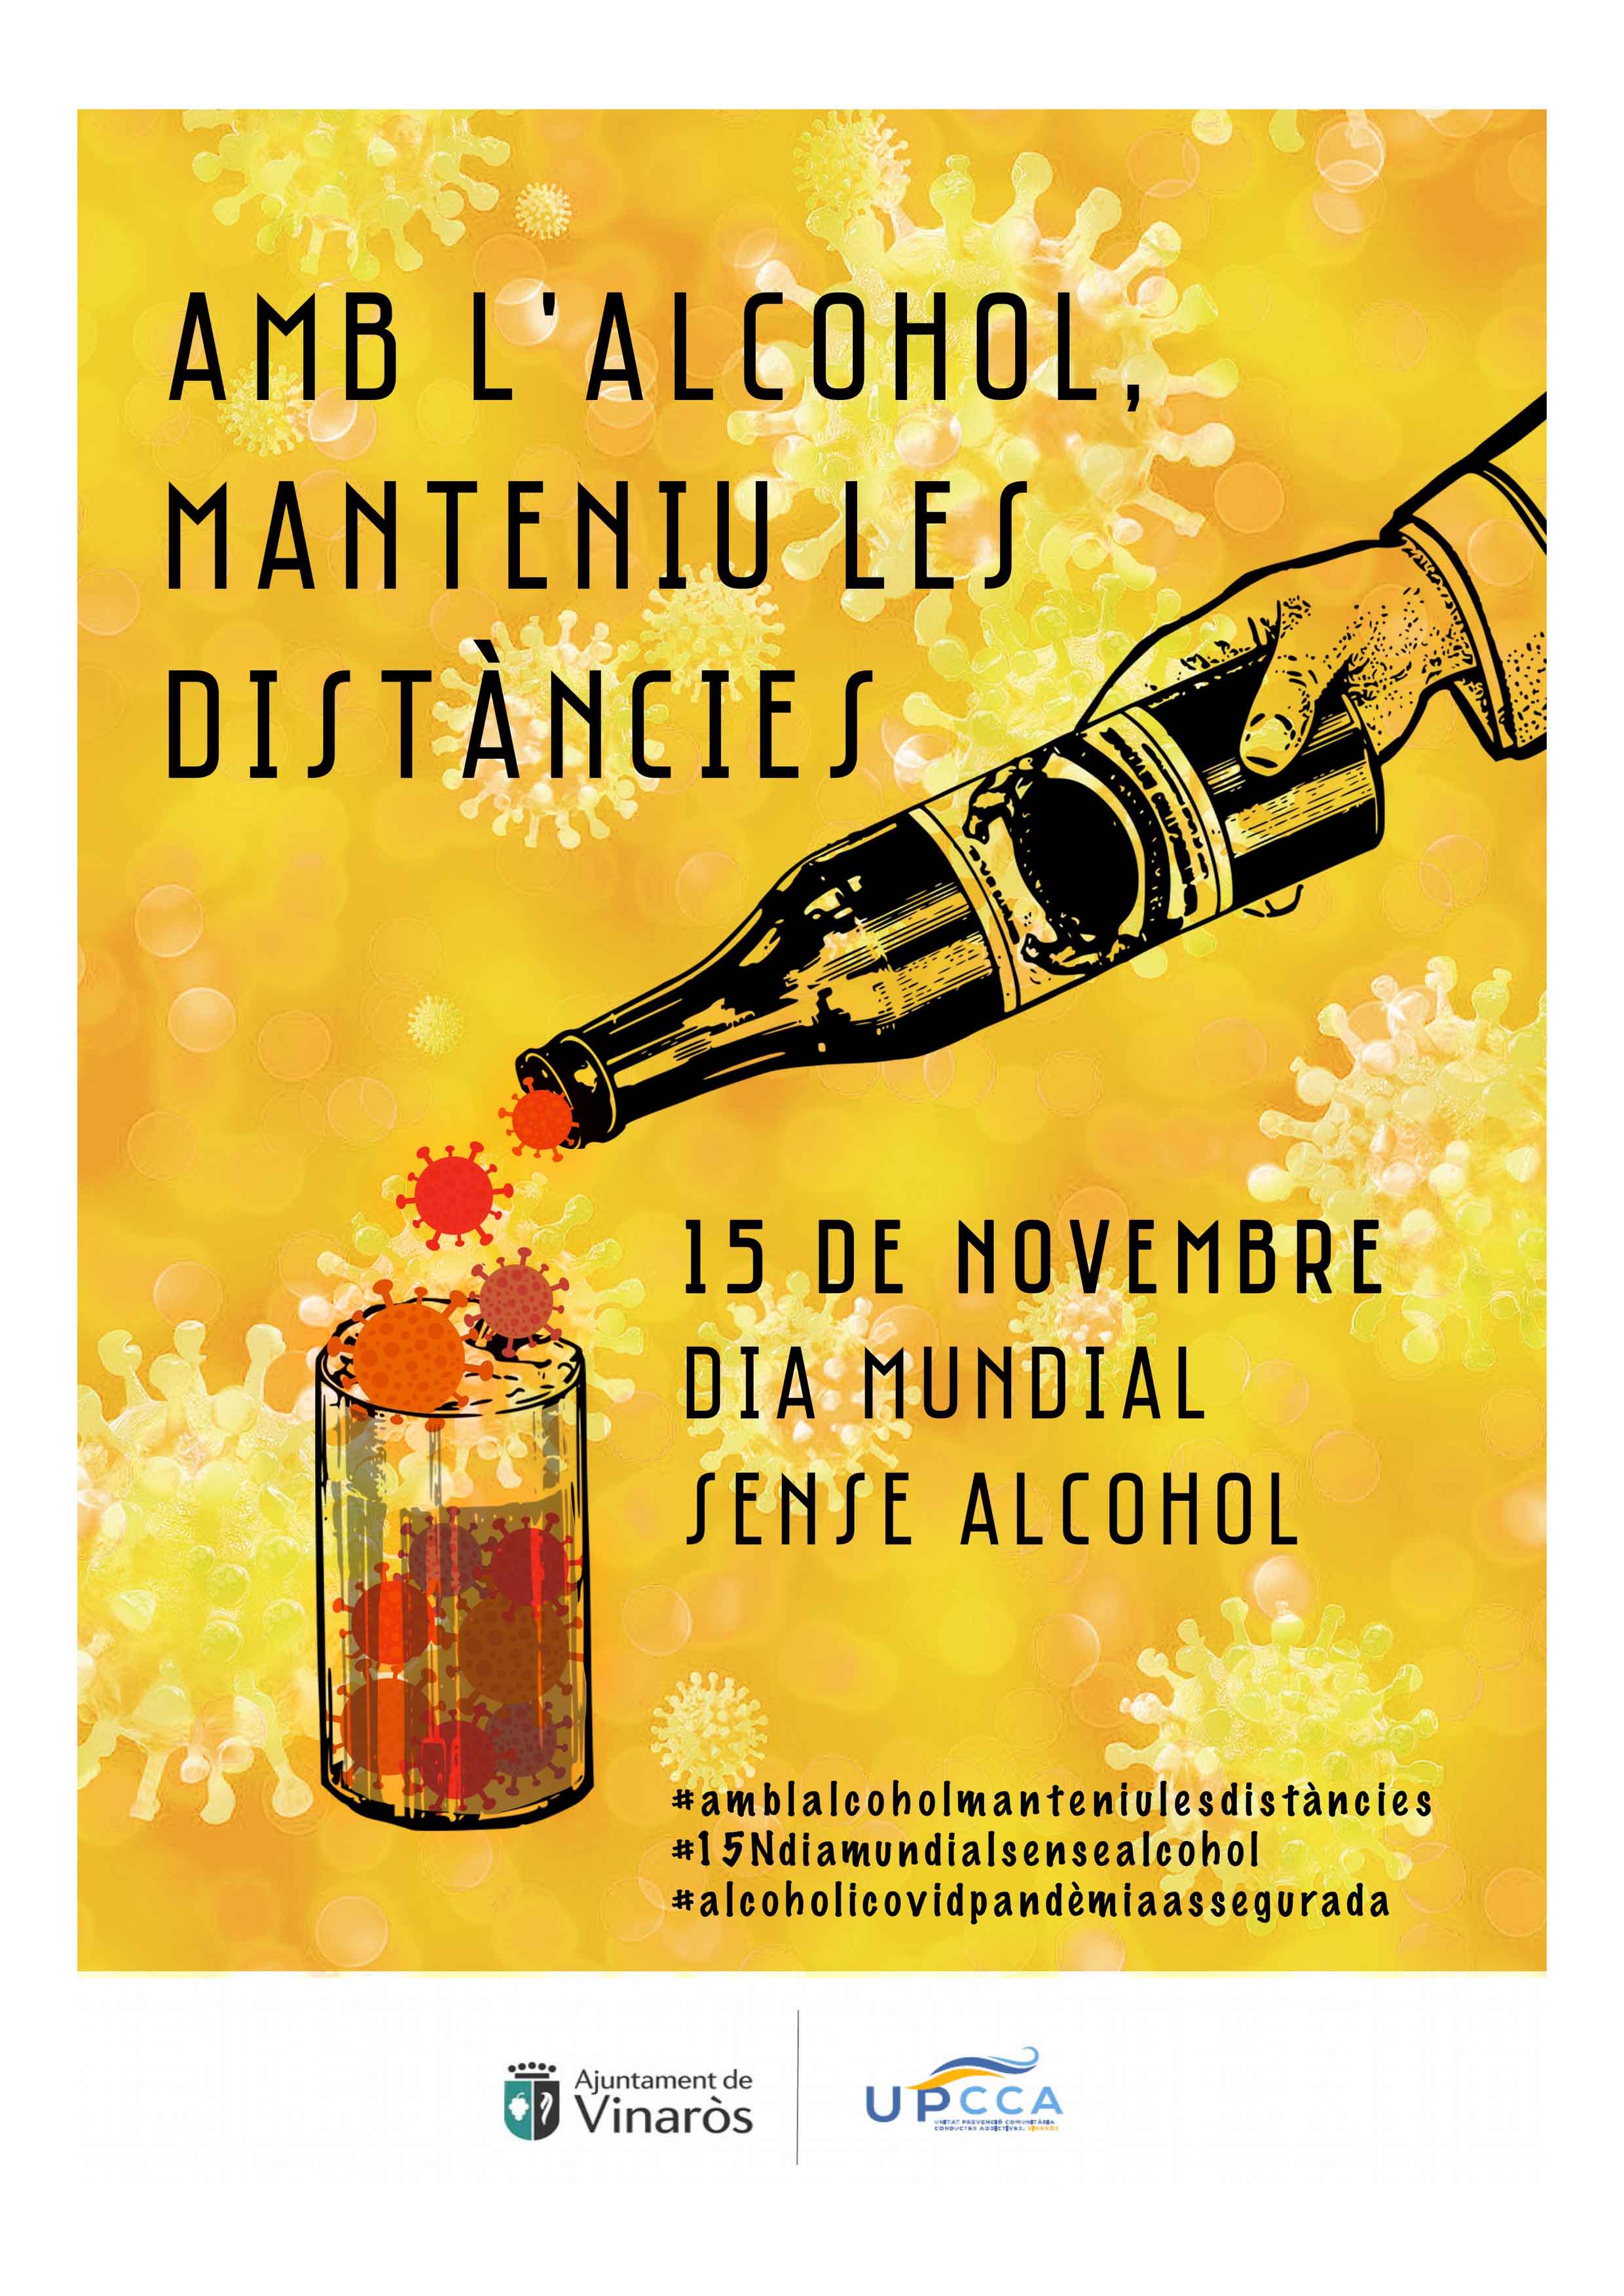 La UPCCA de Vinaròs engega una campanya per alertar del perill del consum d'alcohol durant la pandèmia